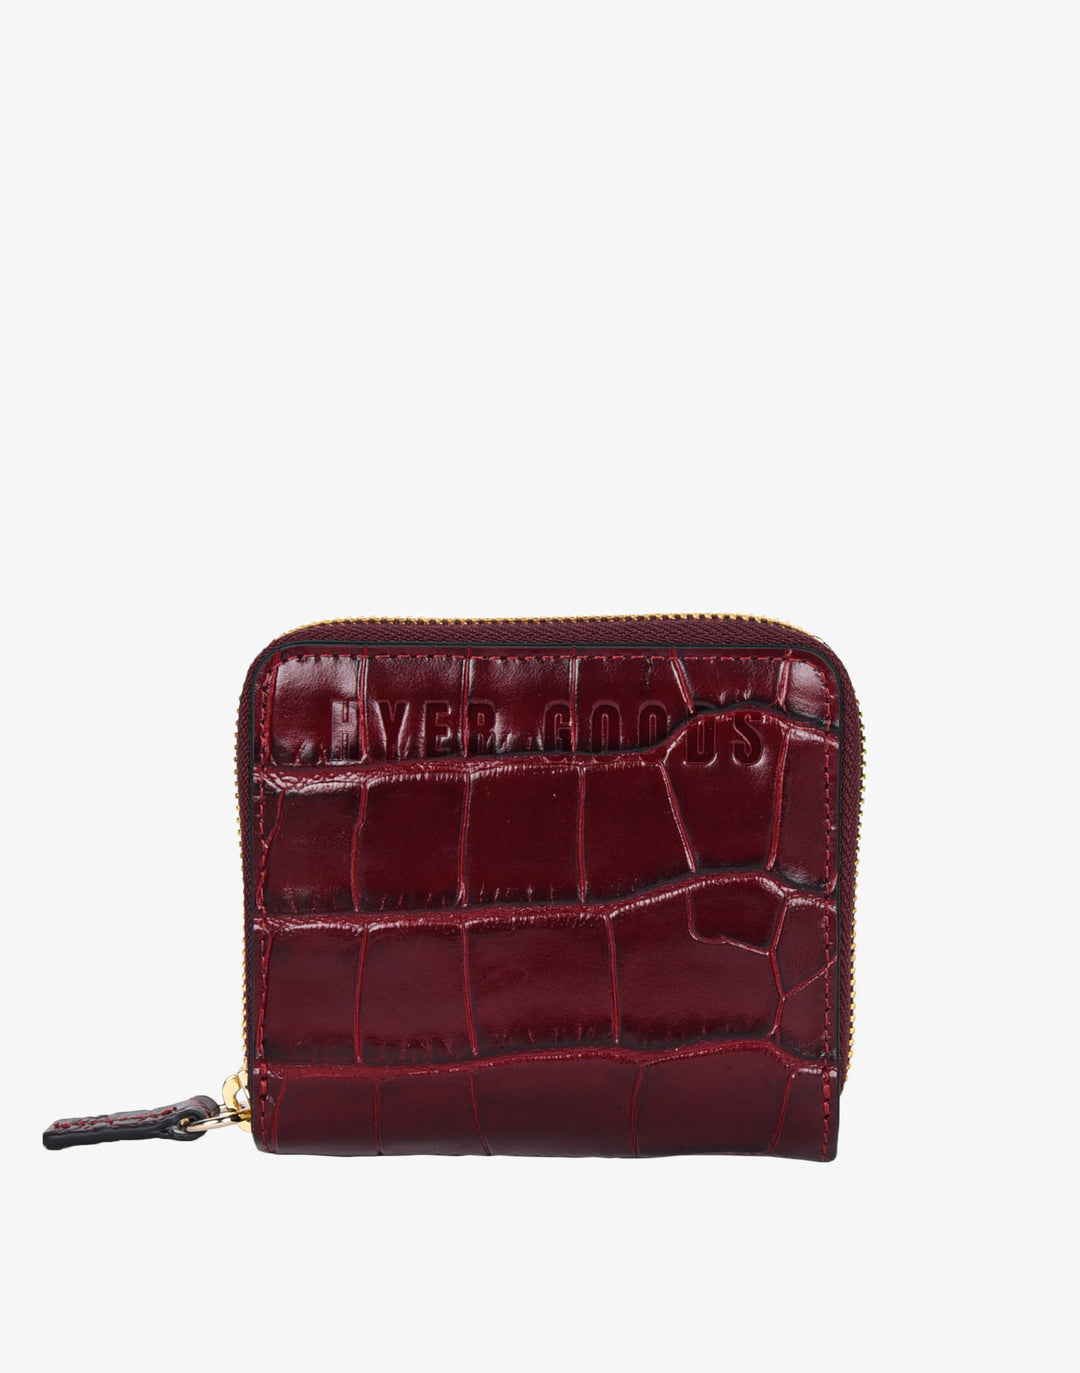 zip wallet red